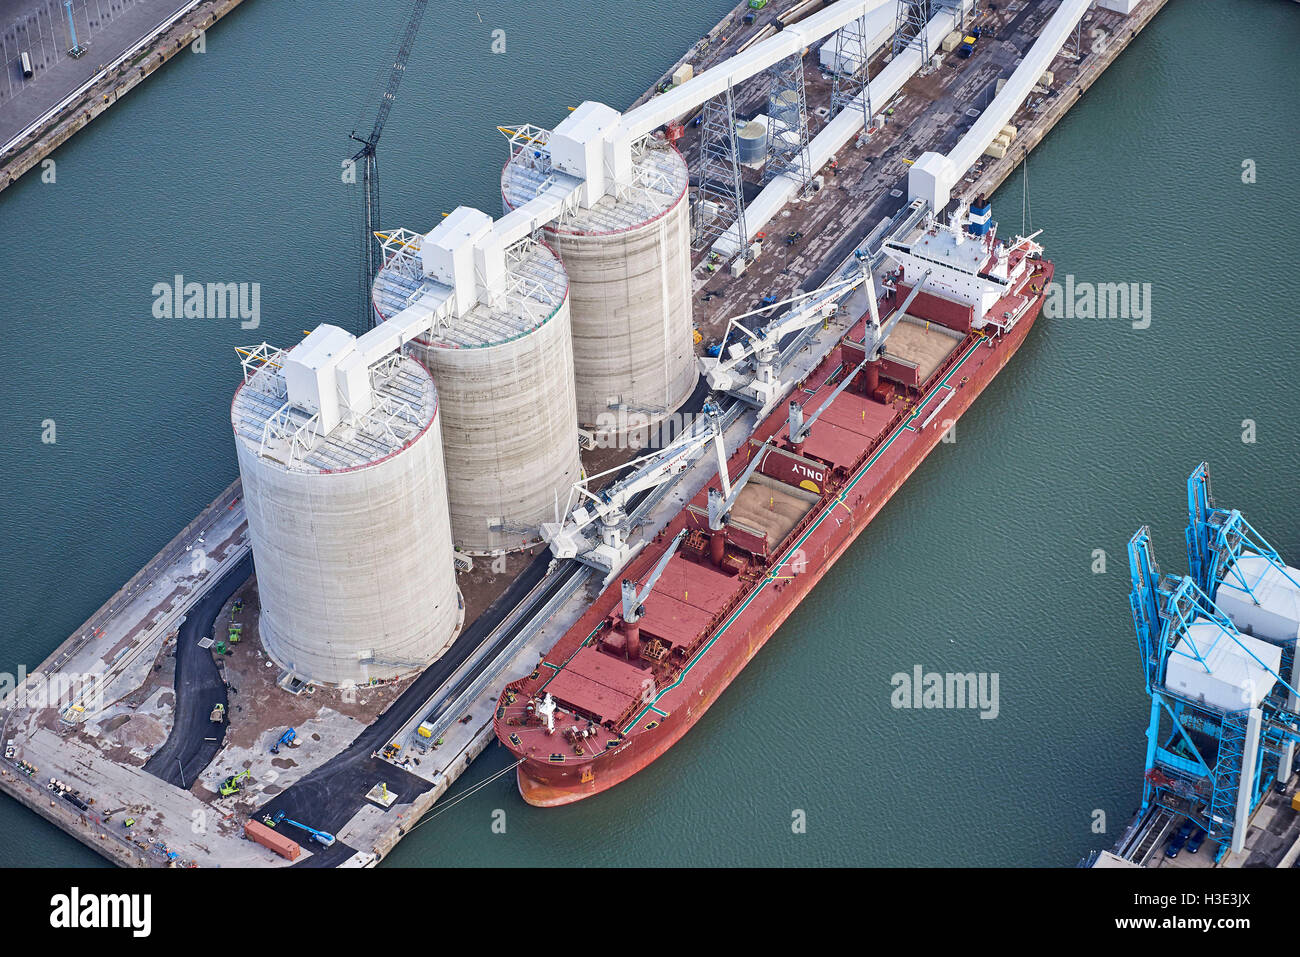 Importazione di biomassa facility, Seaforth Dock Liverpool, NW Inghilterra Foto Stock